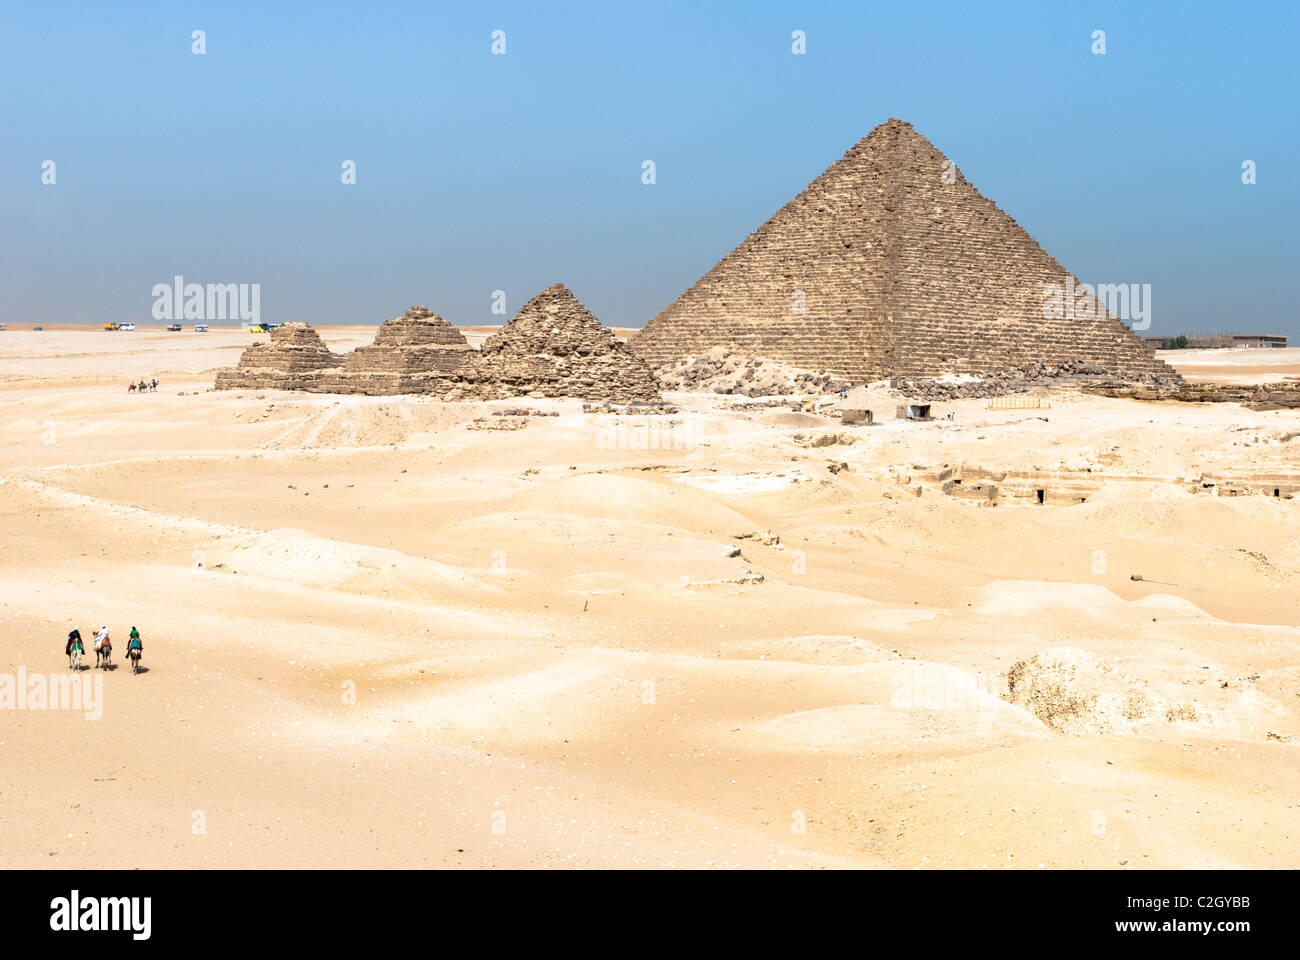 Pyramid of Menkaure - Giza necropolis, Lower Egypt Stock Photo